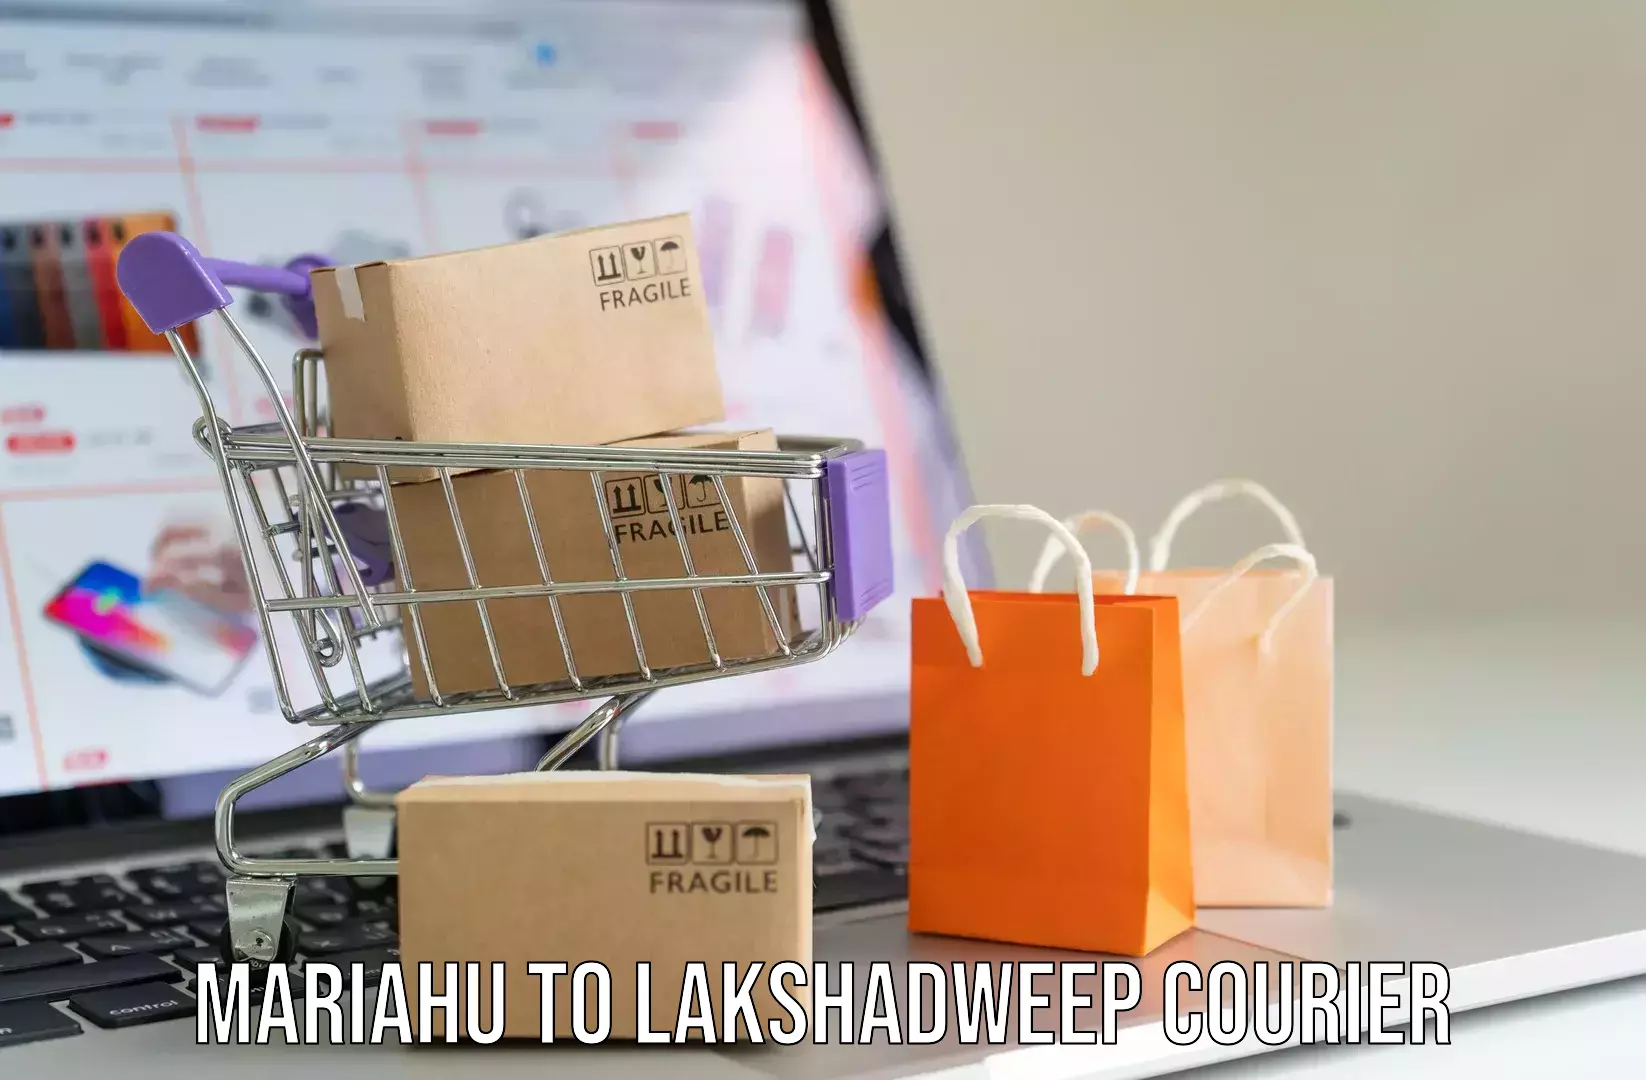 Luggage delivery app Mariahu to Lakshadweep